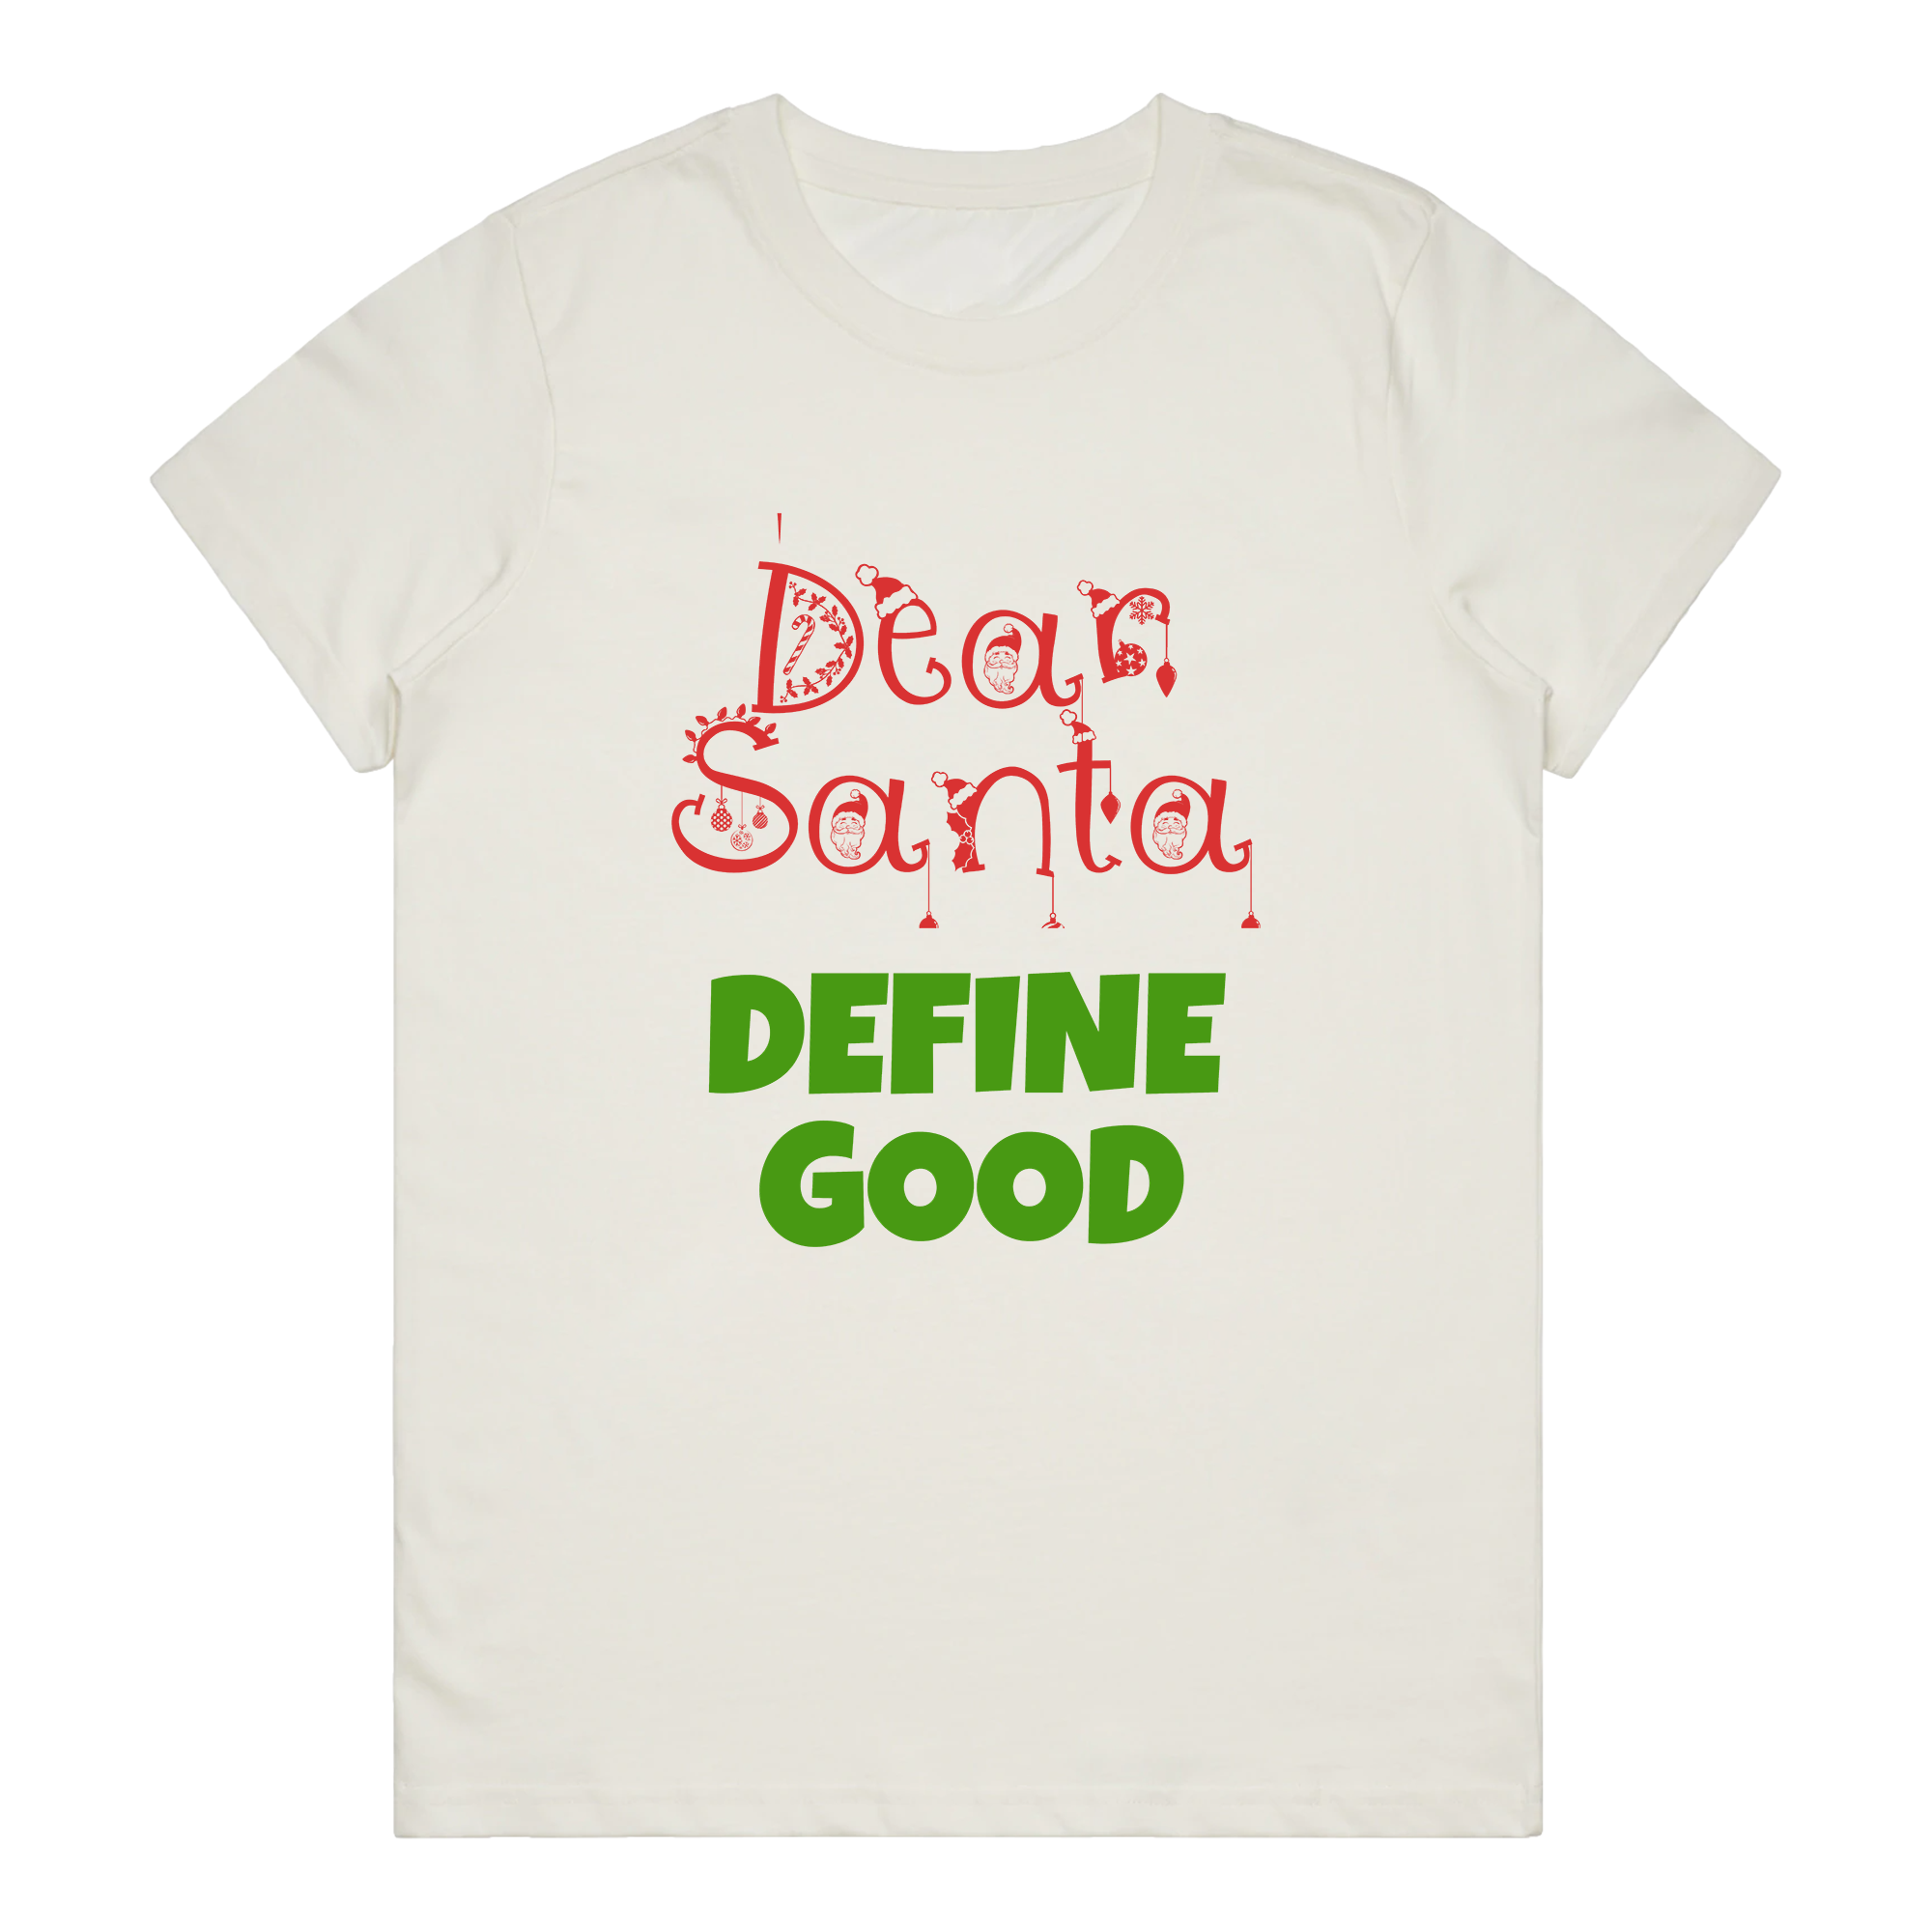 Women's T-Shirt - Define Good